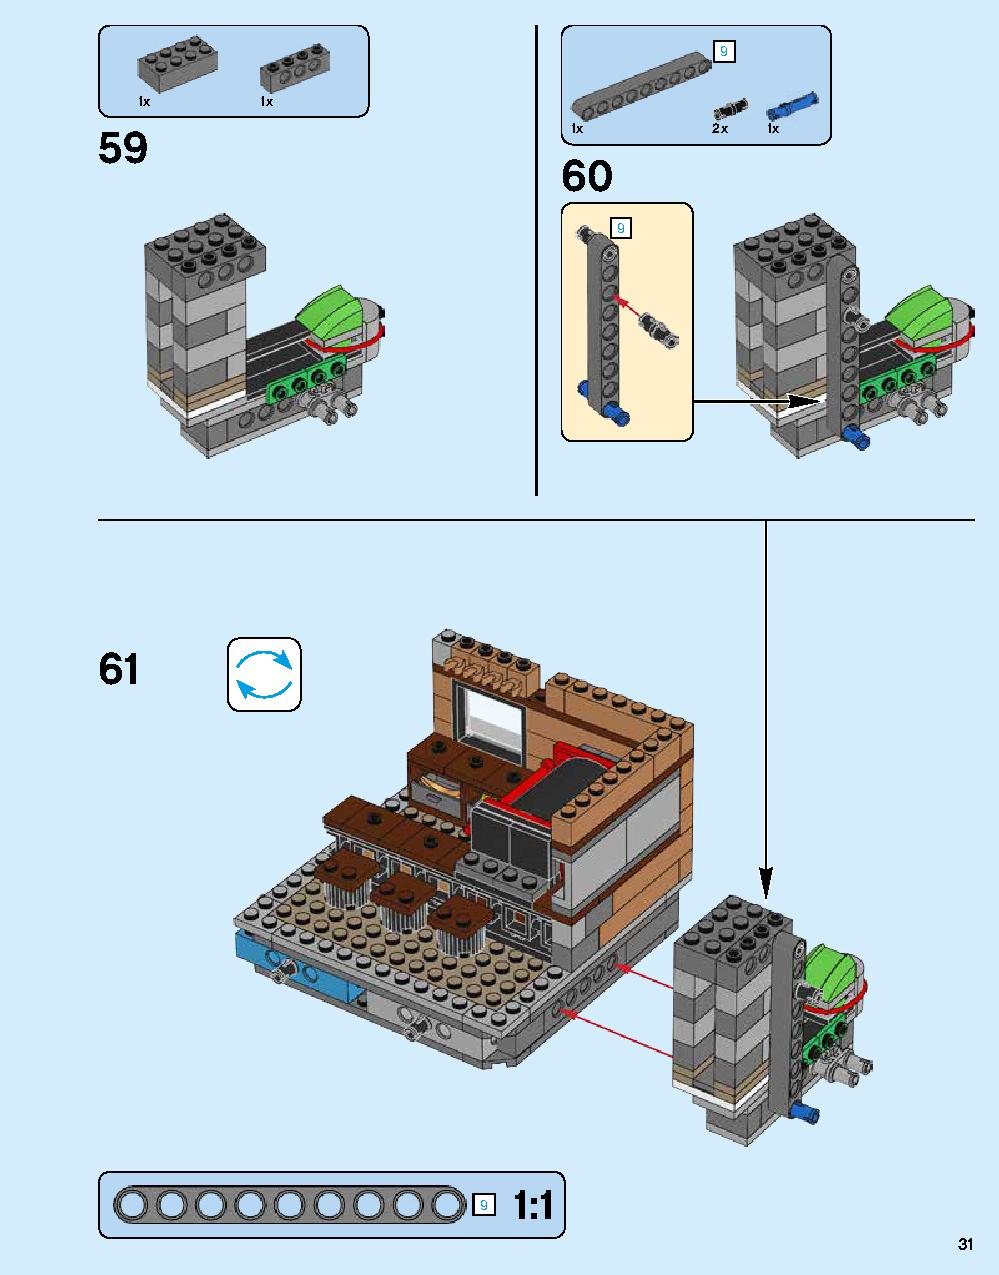 ニンジャゴー シティ 70620 レゴの商品情報 レゴの説明書・組立方法 31 page